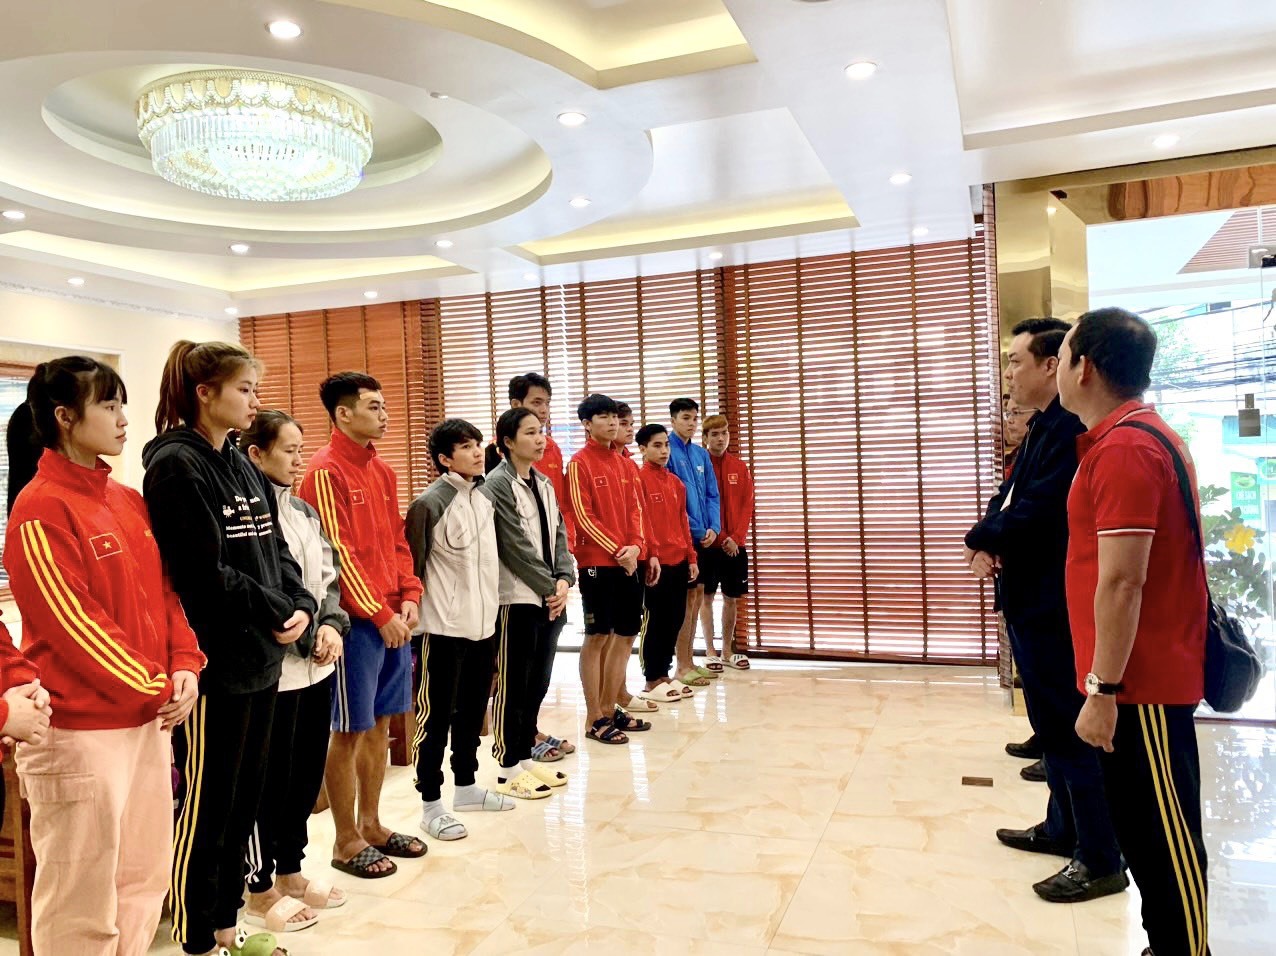 Lãnh đạo đoàn Thể thao Bình Dương thăm hỏi động viên đội tuyển Pencak silat đang tập luyện tại Hạ Long, Quảng Ninh.